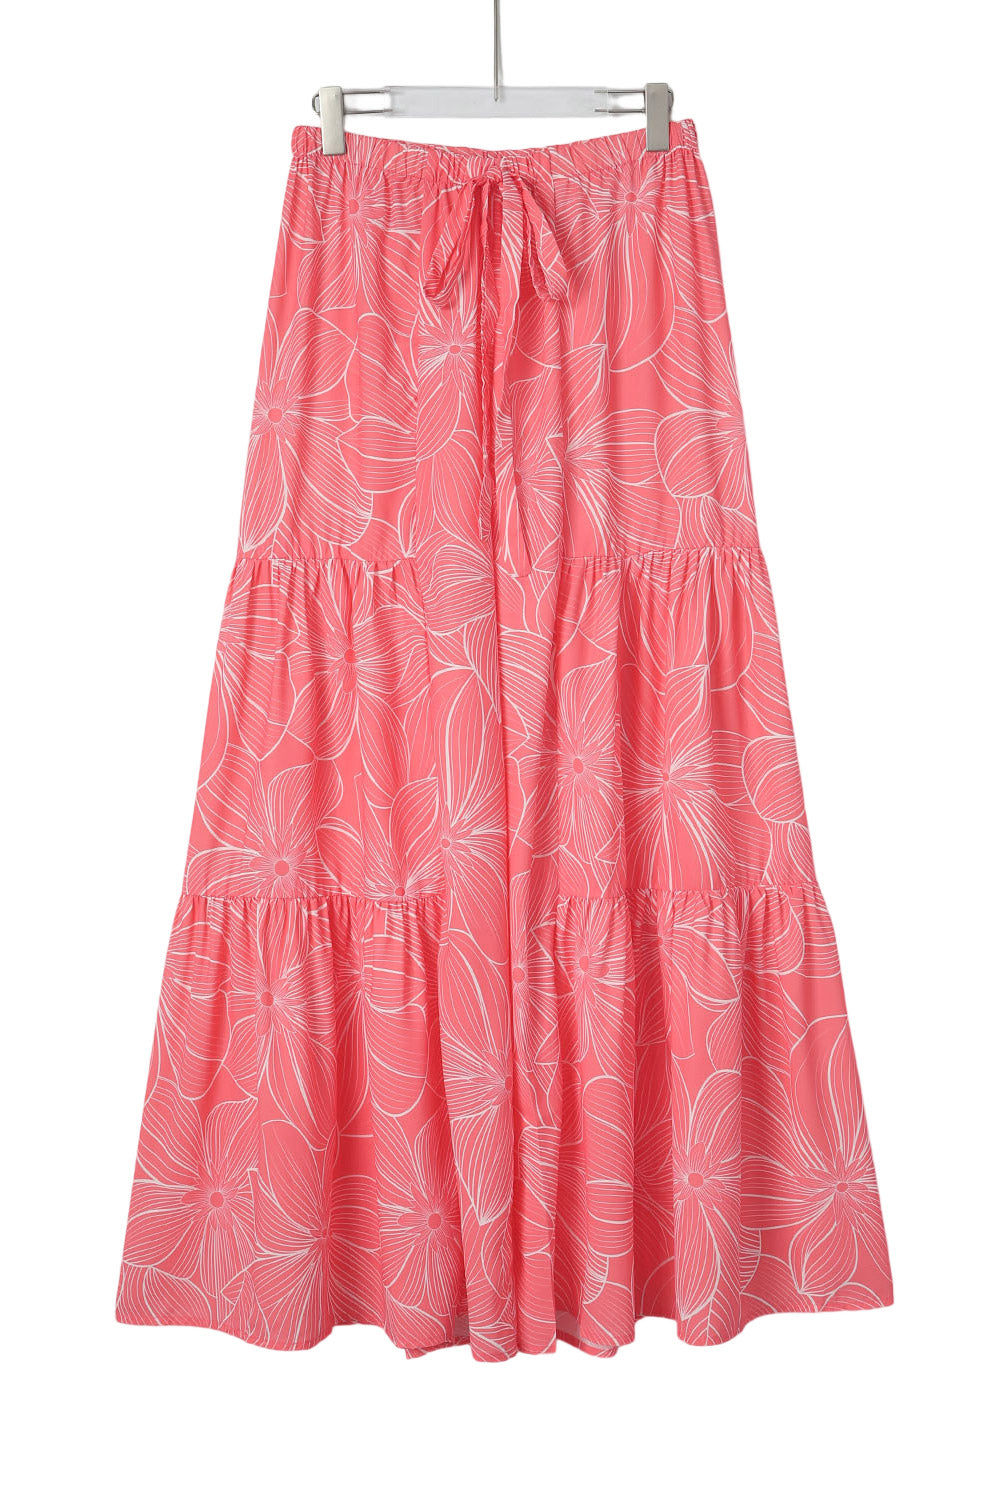 Pantaloni larghi con stampa floreale bohémien rosa